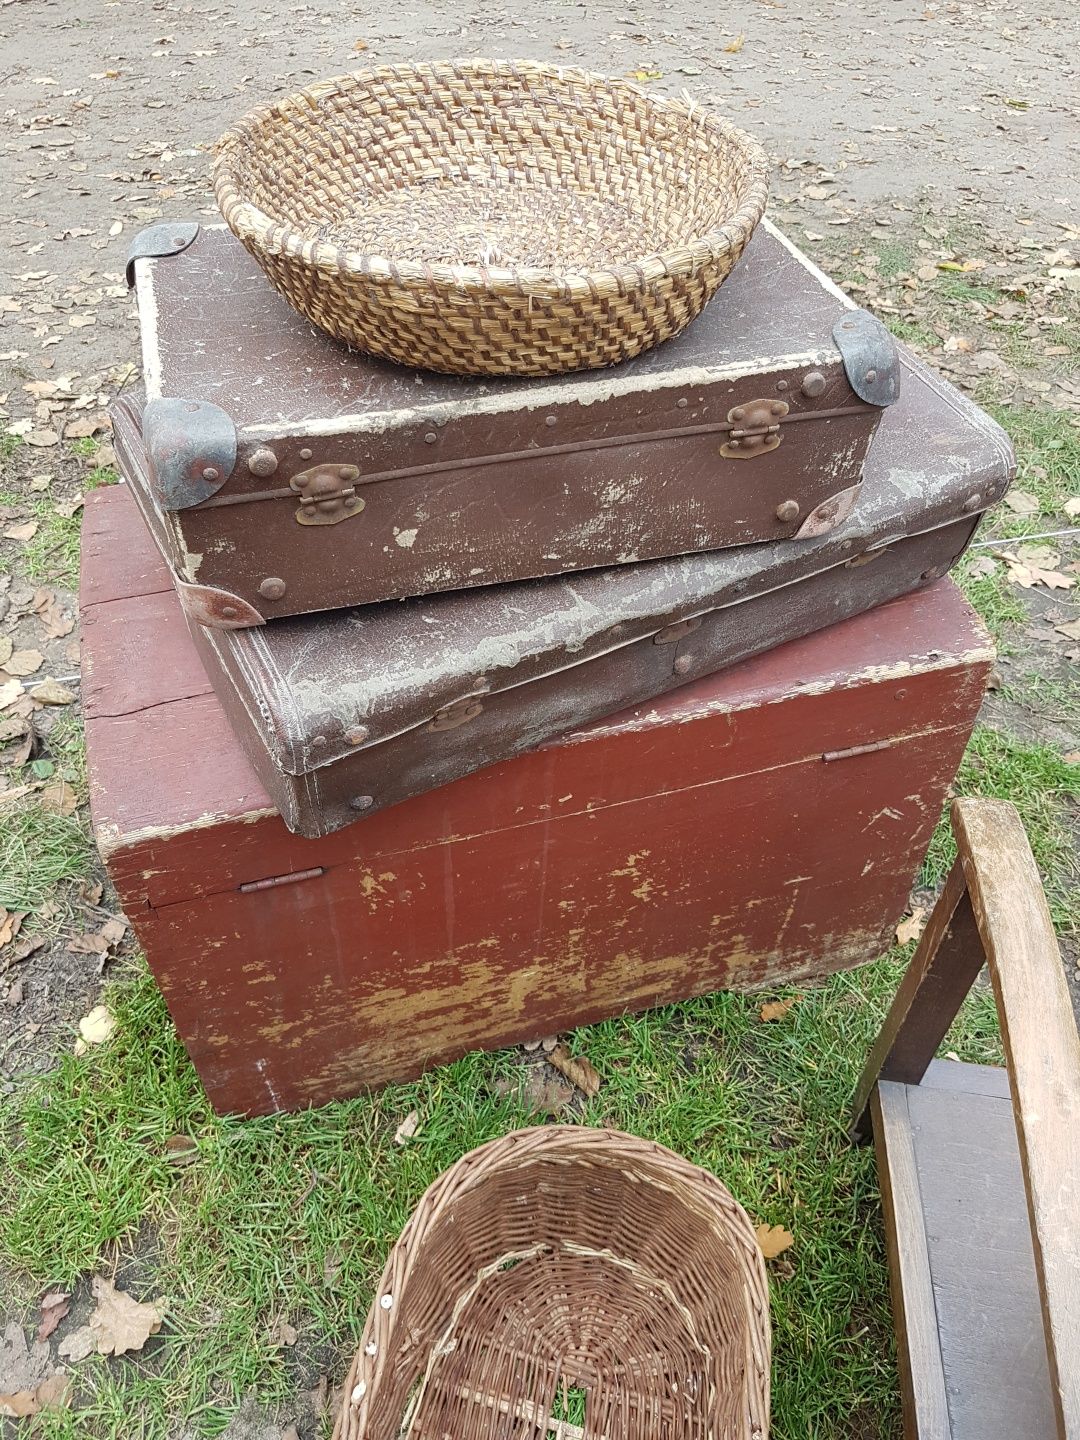 Starocie wiejskie ludowe stary antyk stara chata kufer beczka koło